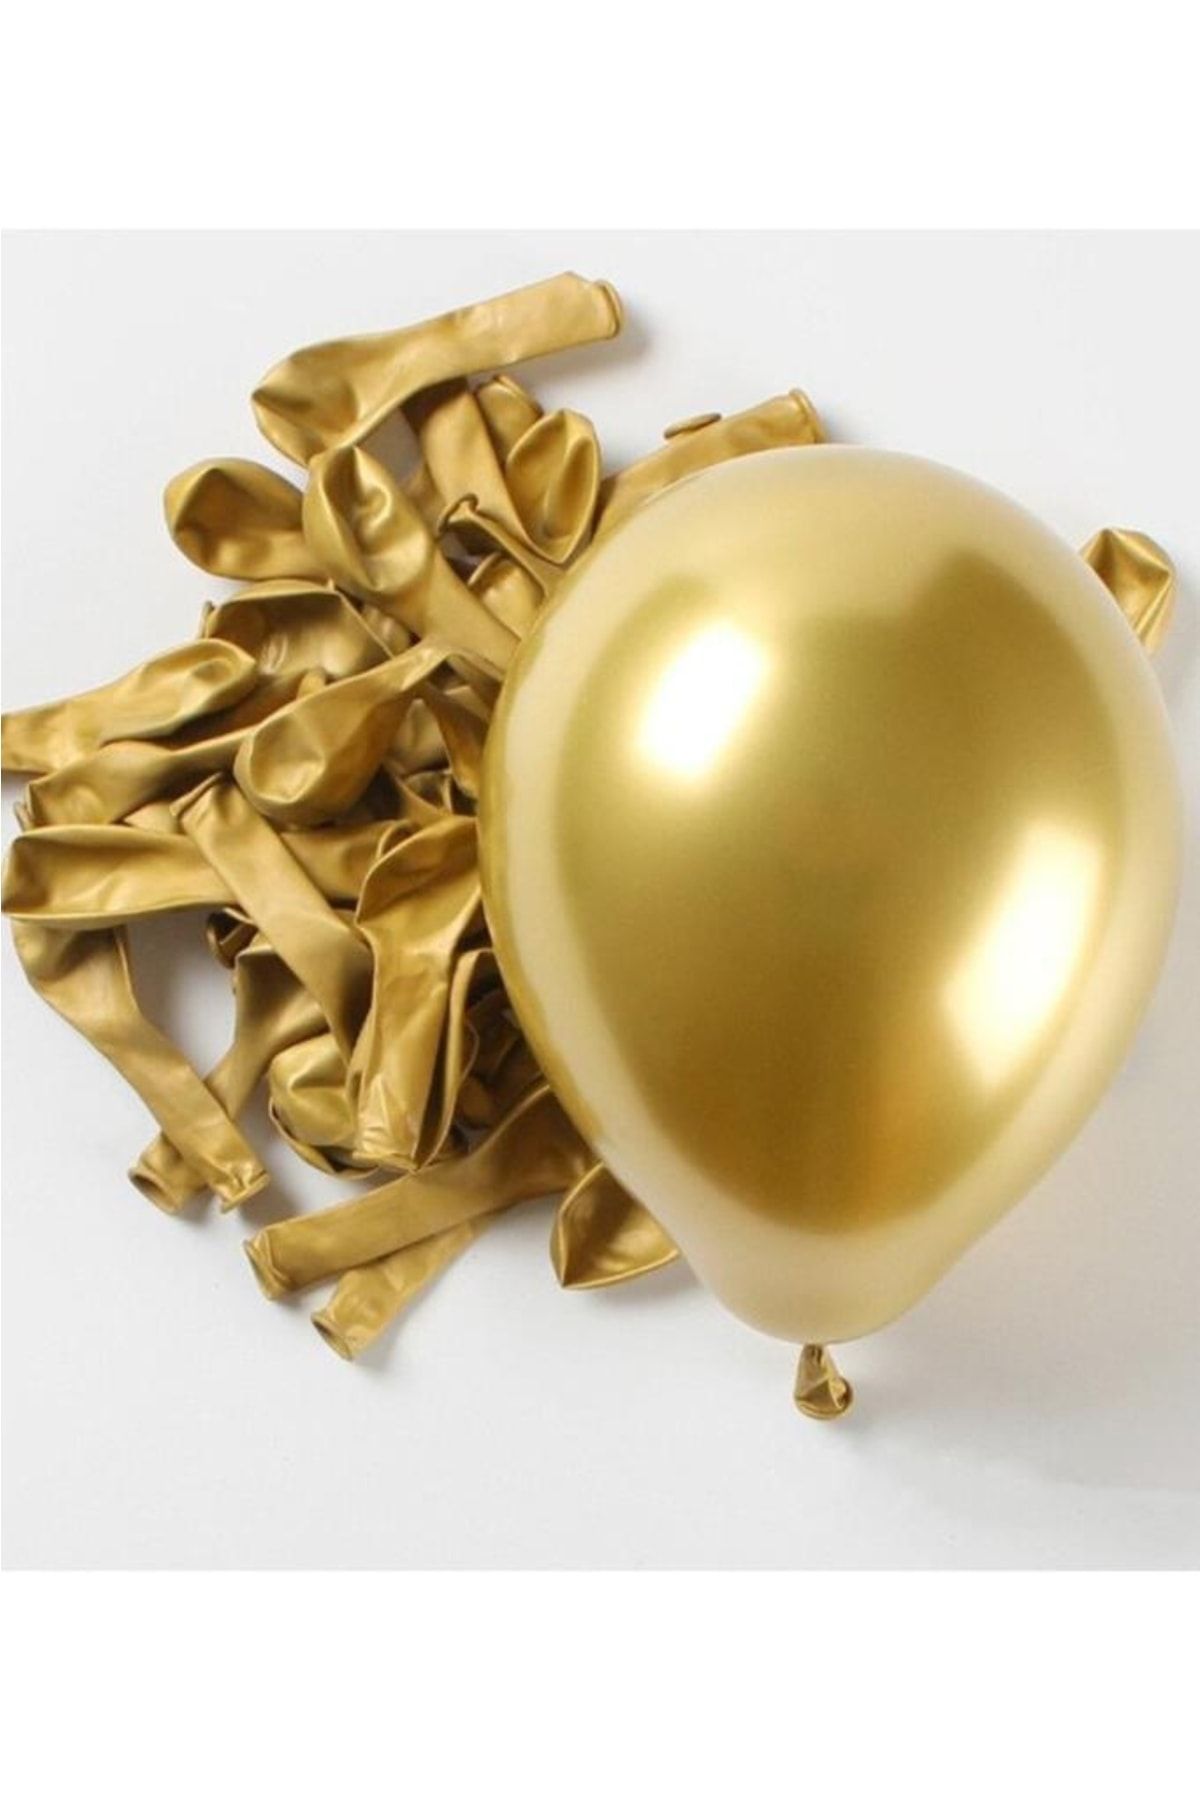 BeySüS Krom Balon Gold 12 Inç 5 Li